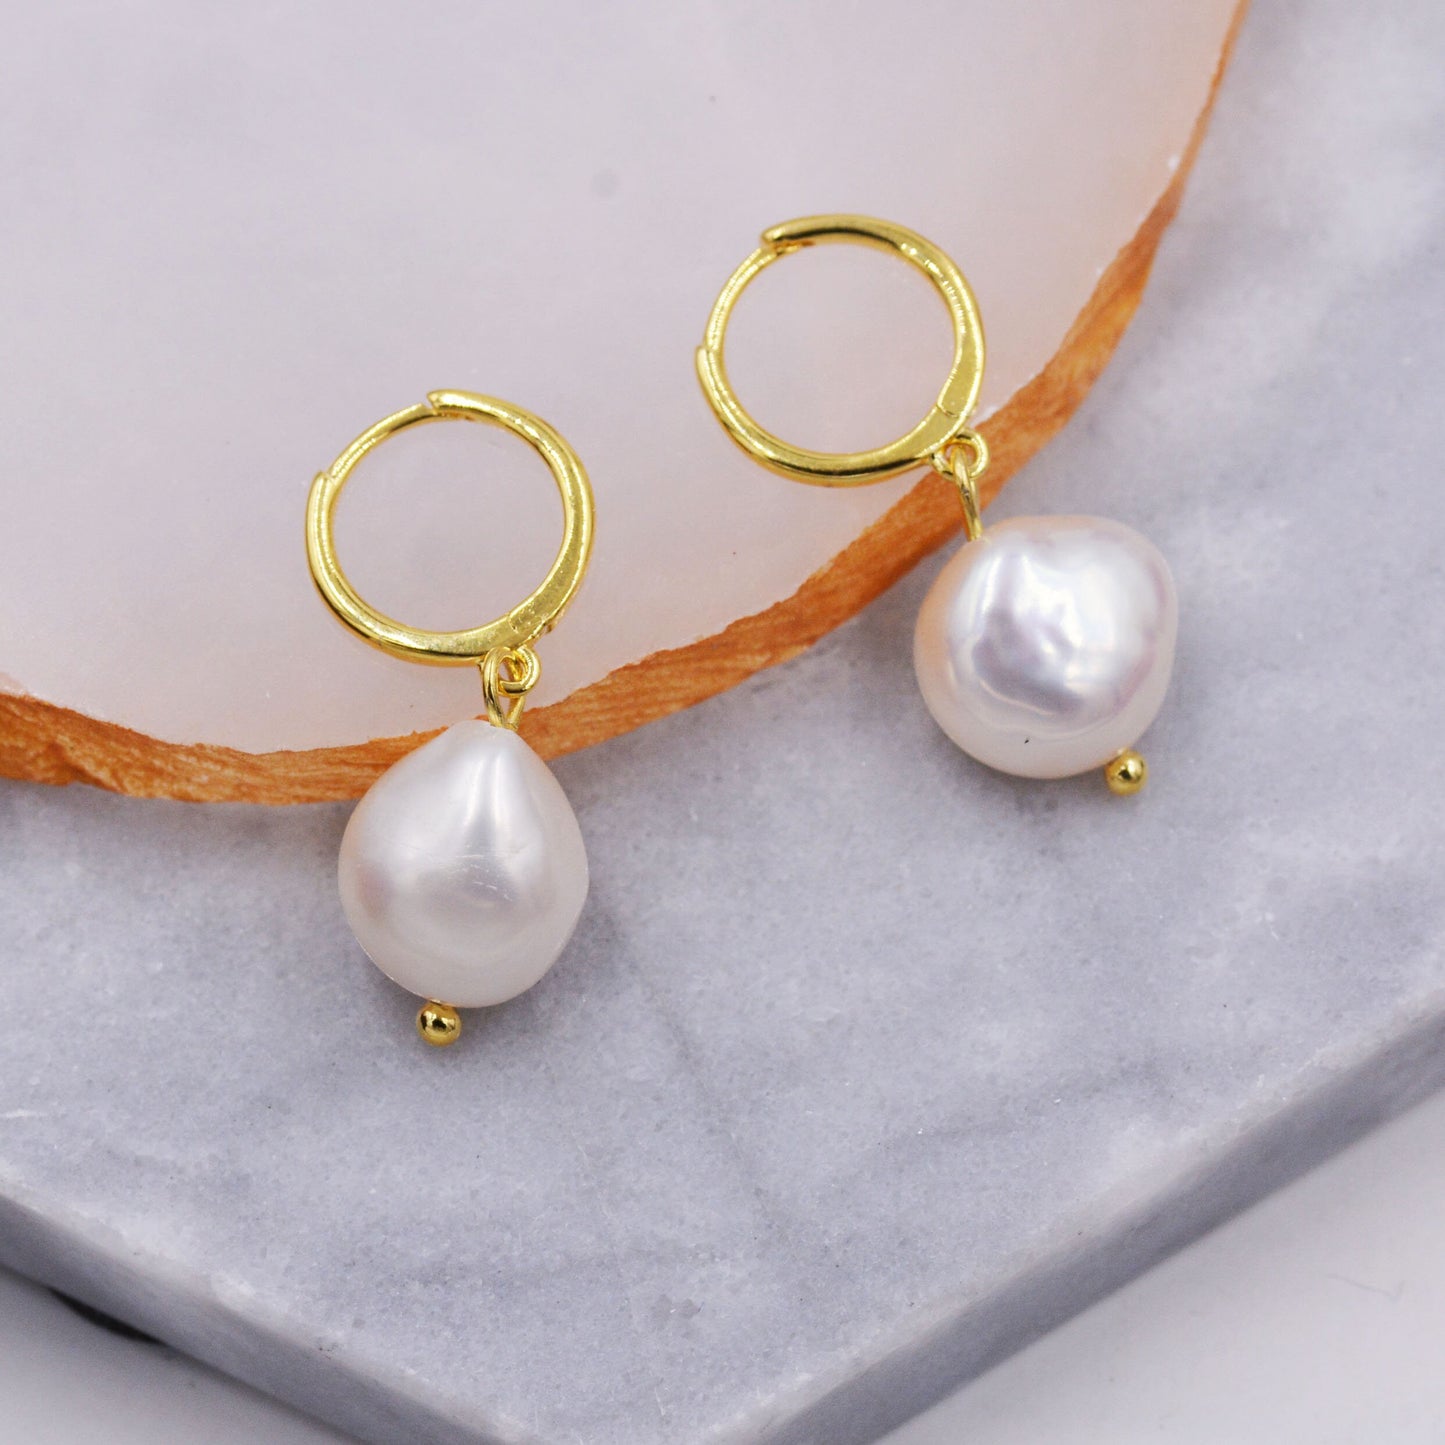 Sterling Silver Baroque Pearl Huggie Hoop Earrings, Drop Earrings with 18ct Gold Plate, Genuine Freshwater Pearls, Irregular Pearls J32